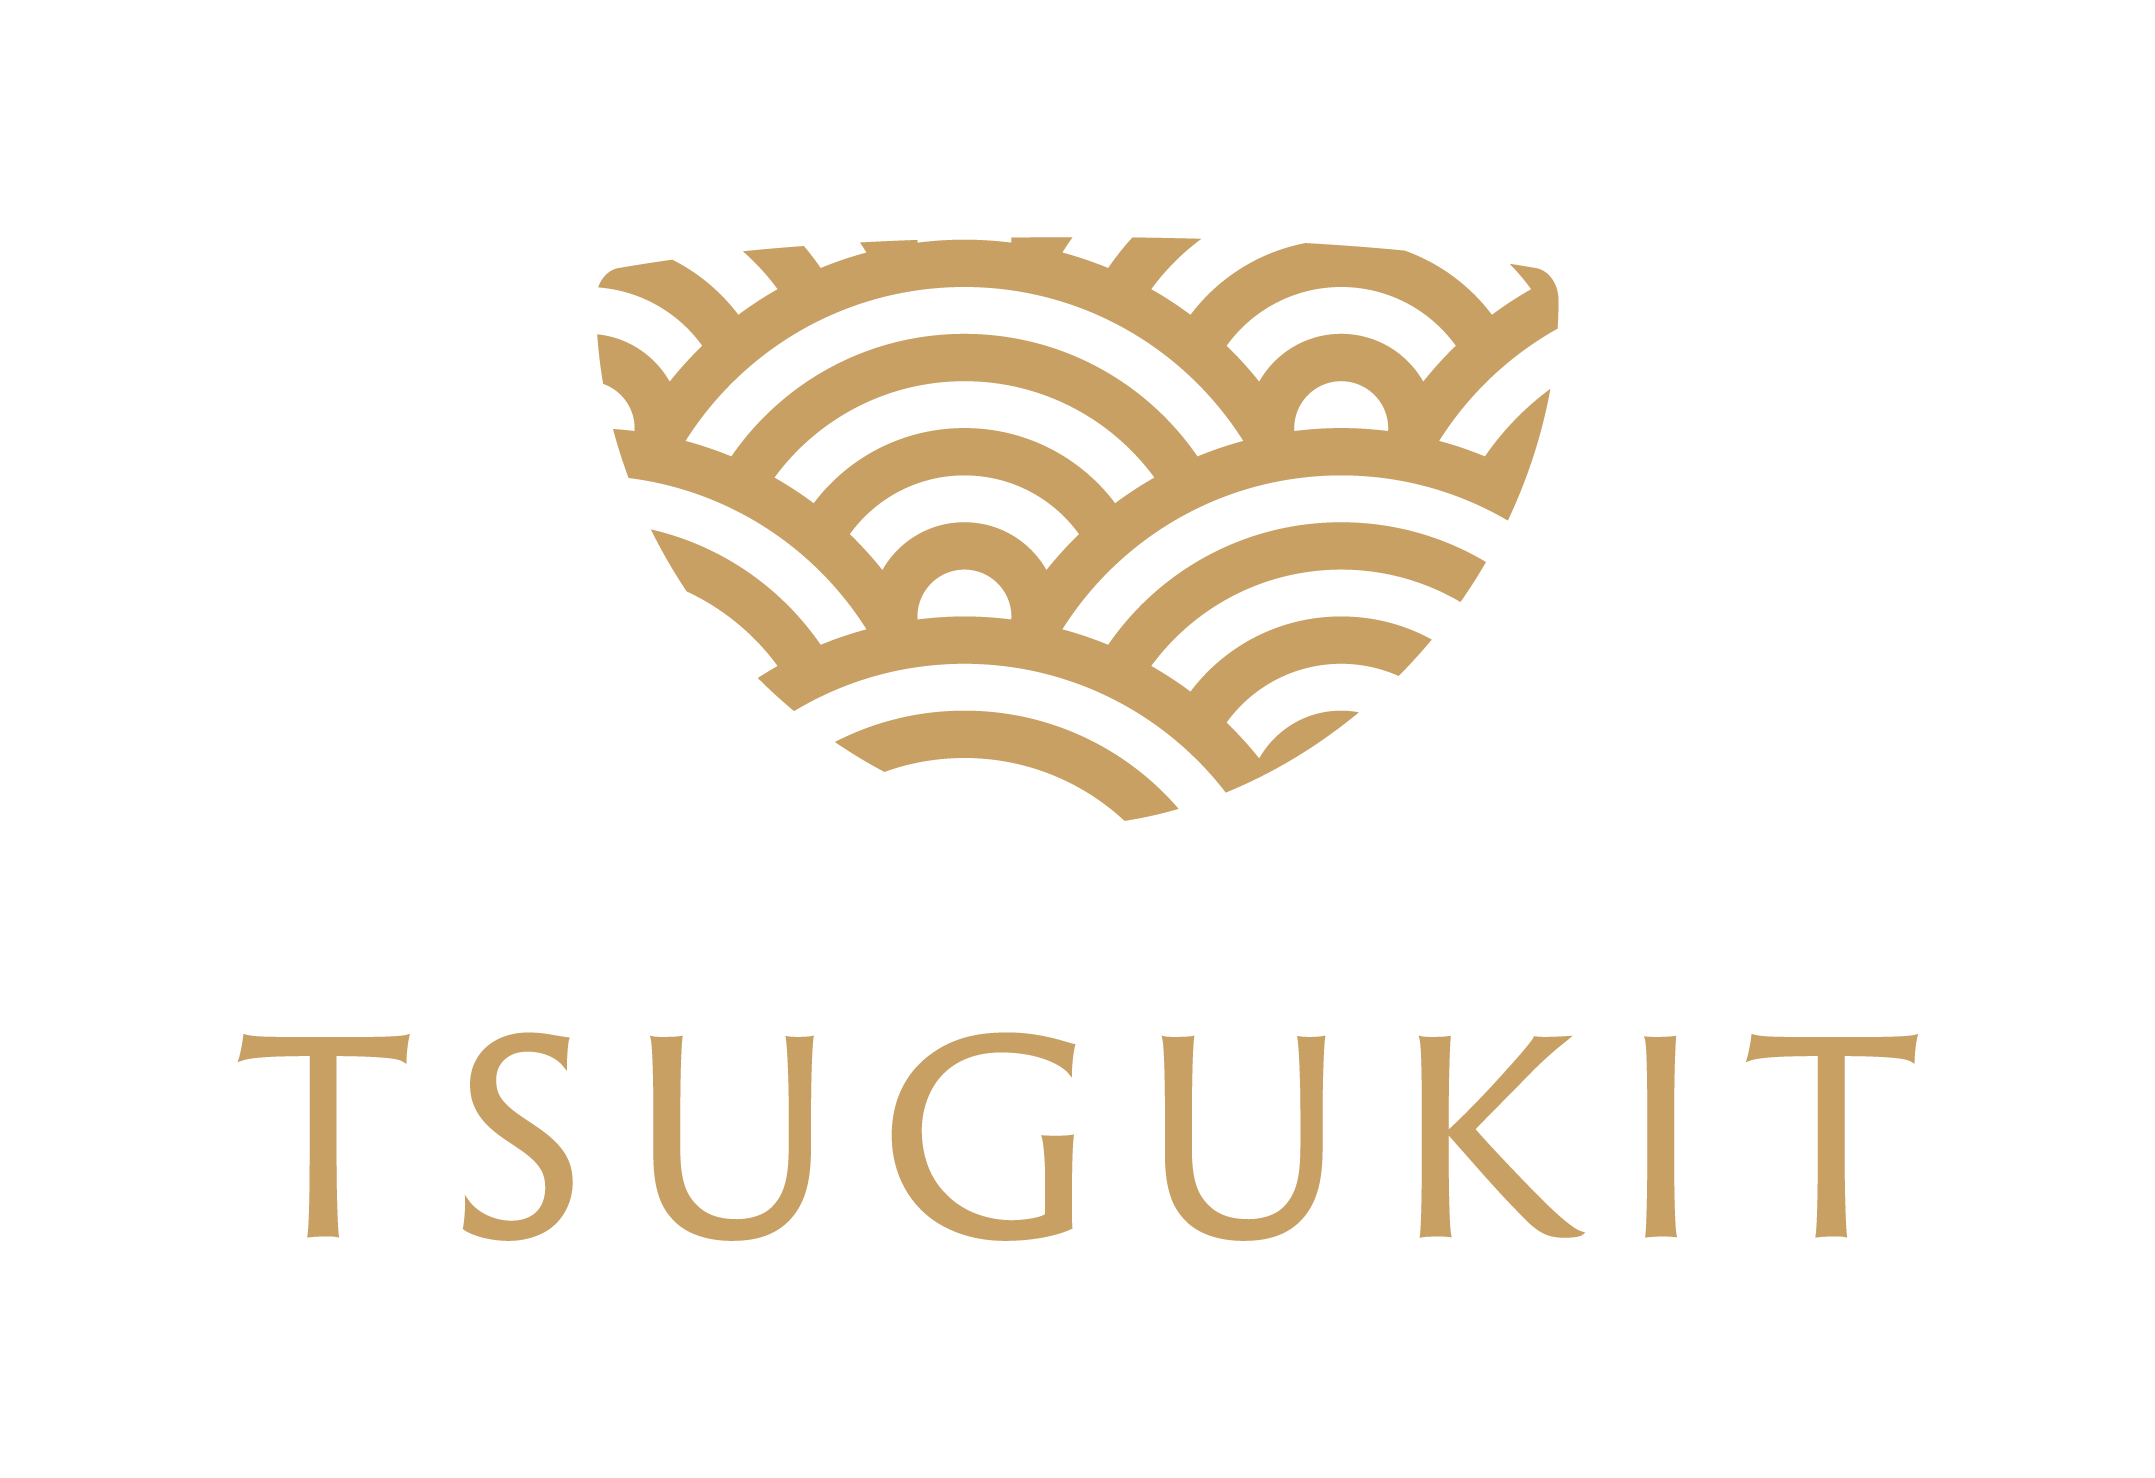 金継ぎキット初心者用【TSUGUKIT/つぐキット】 Kintsugi Kit for Beginners